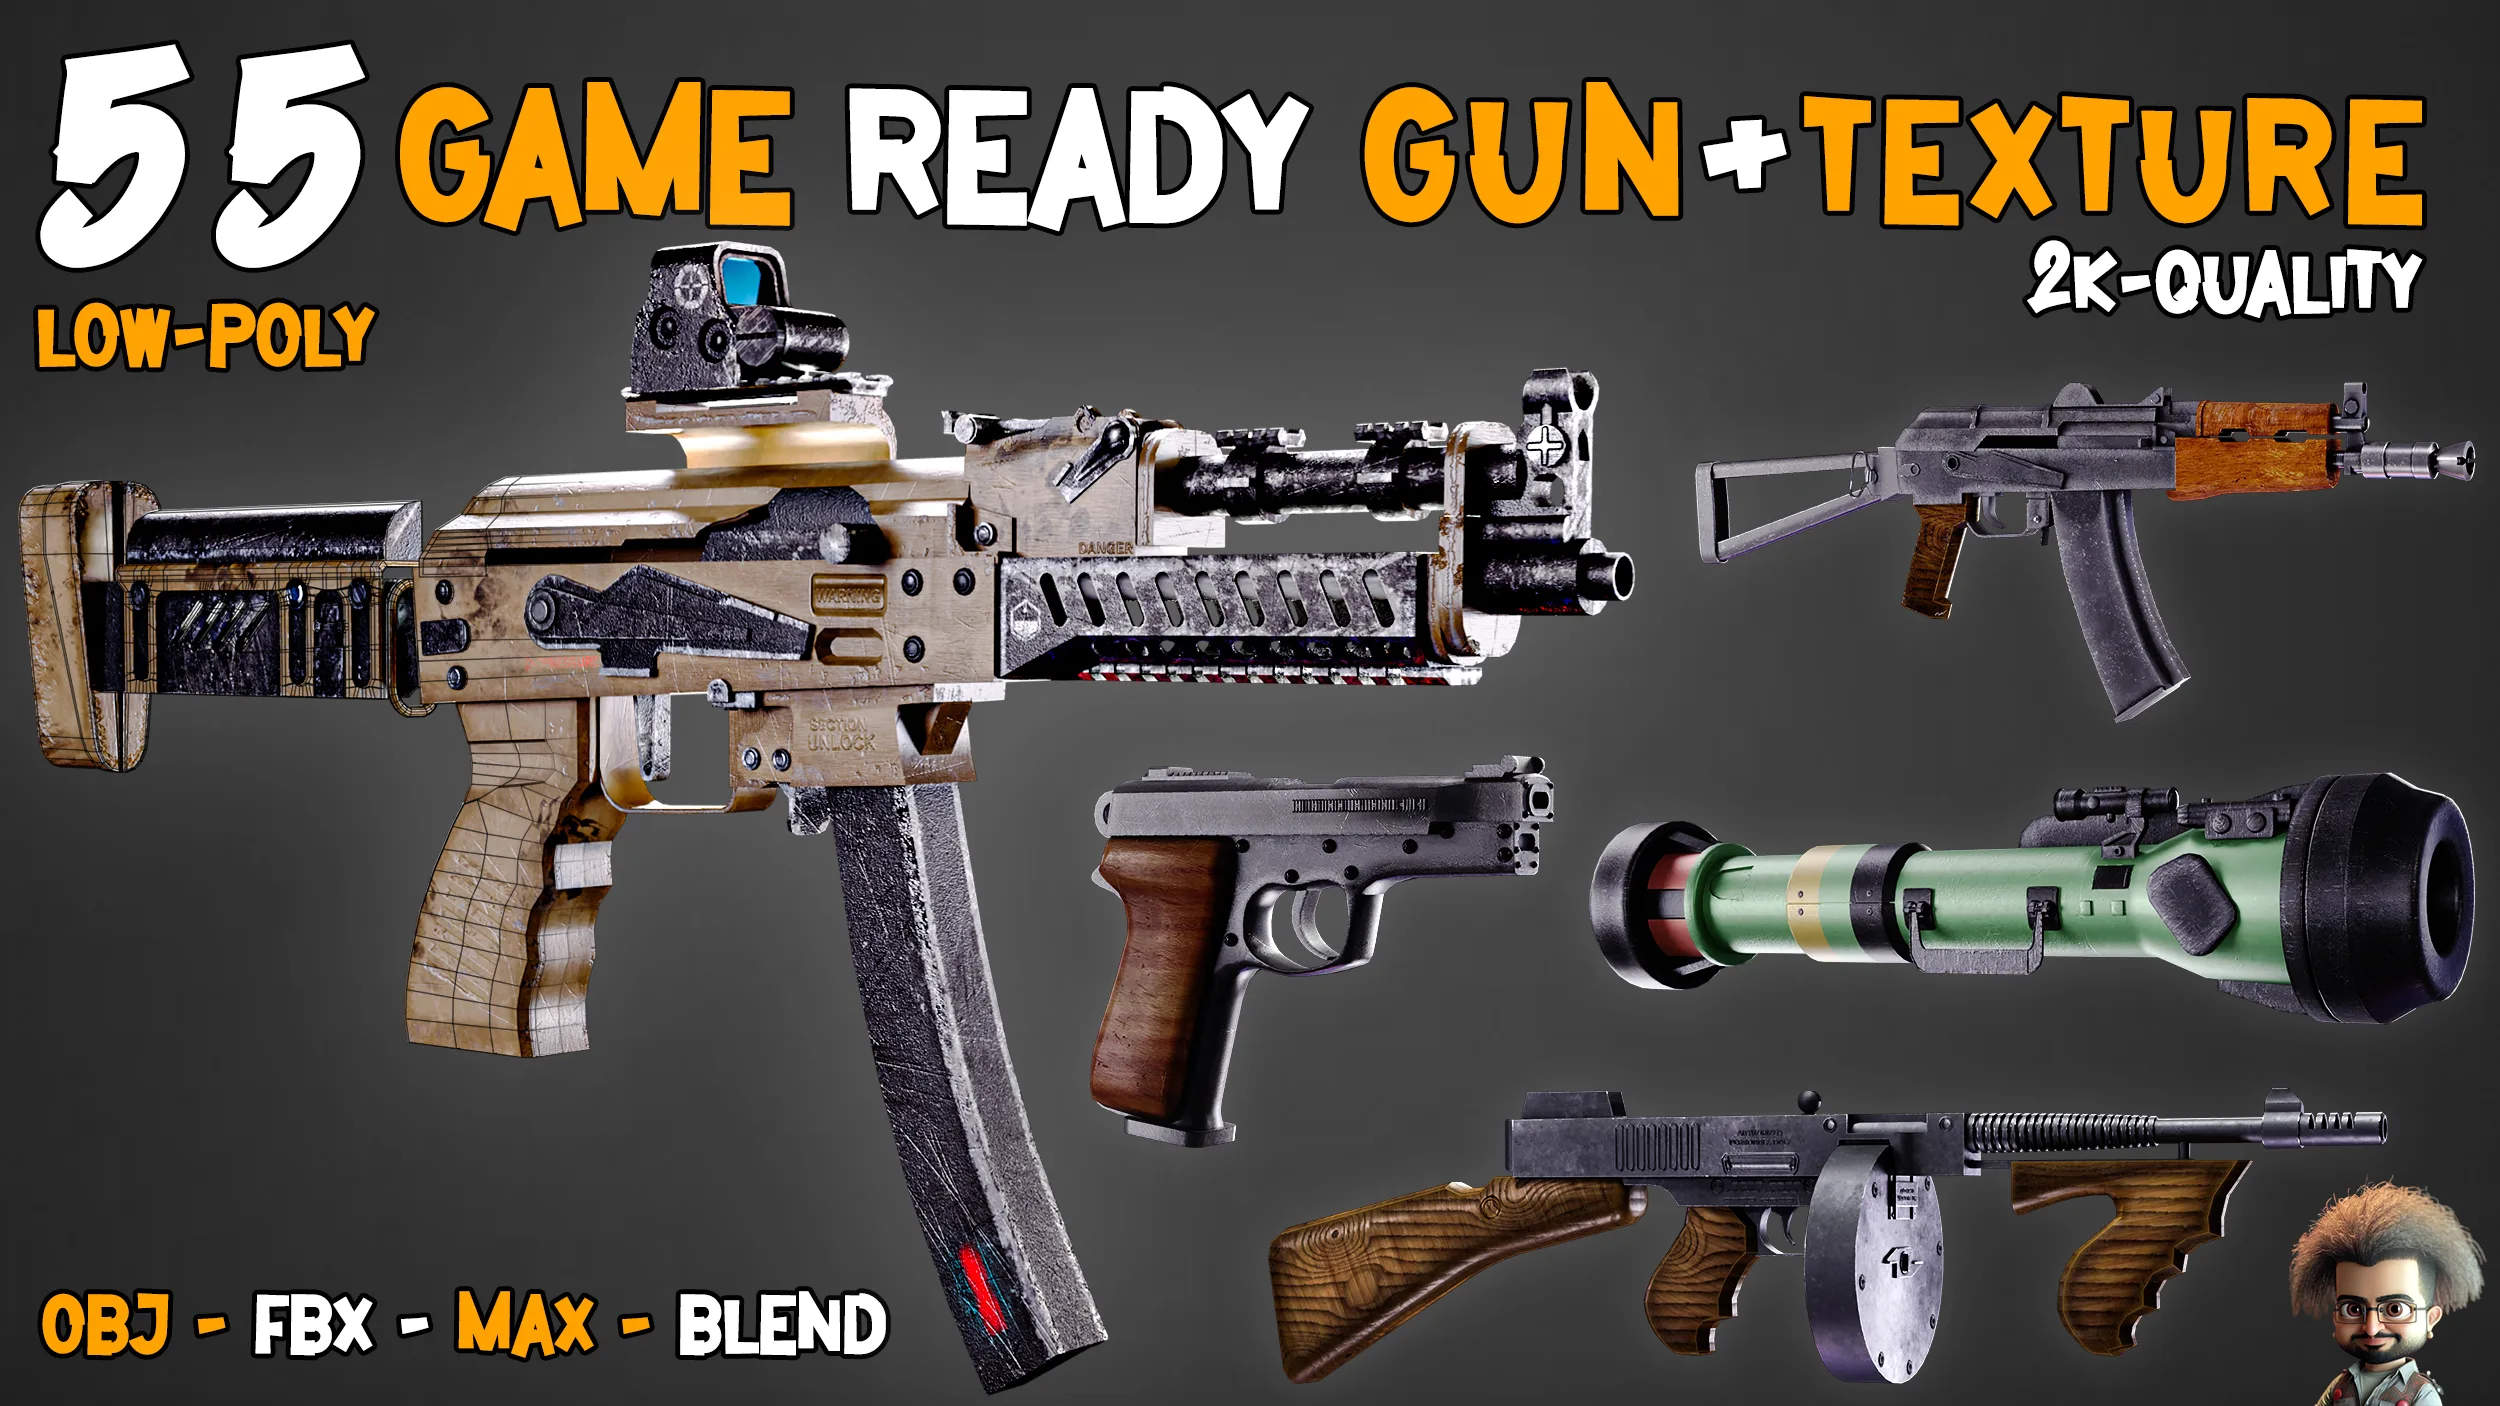 55 Super Game-Ready Guns + Texture – Vol 01